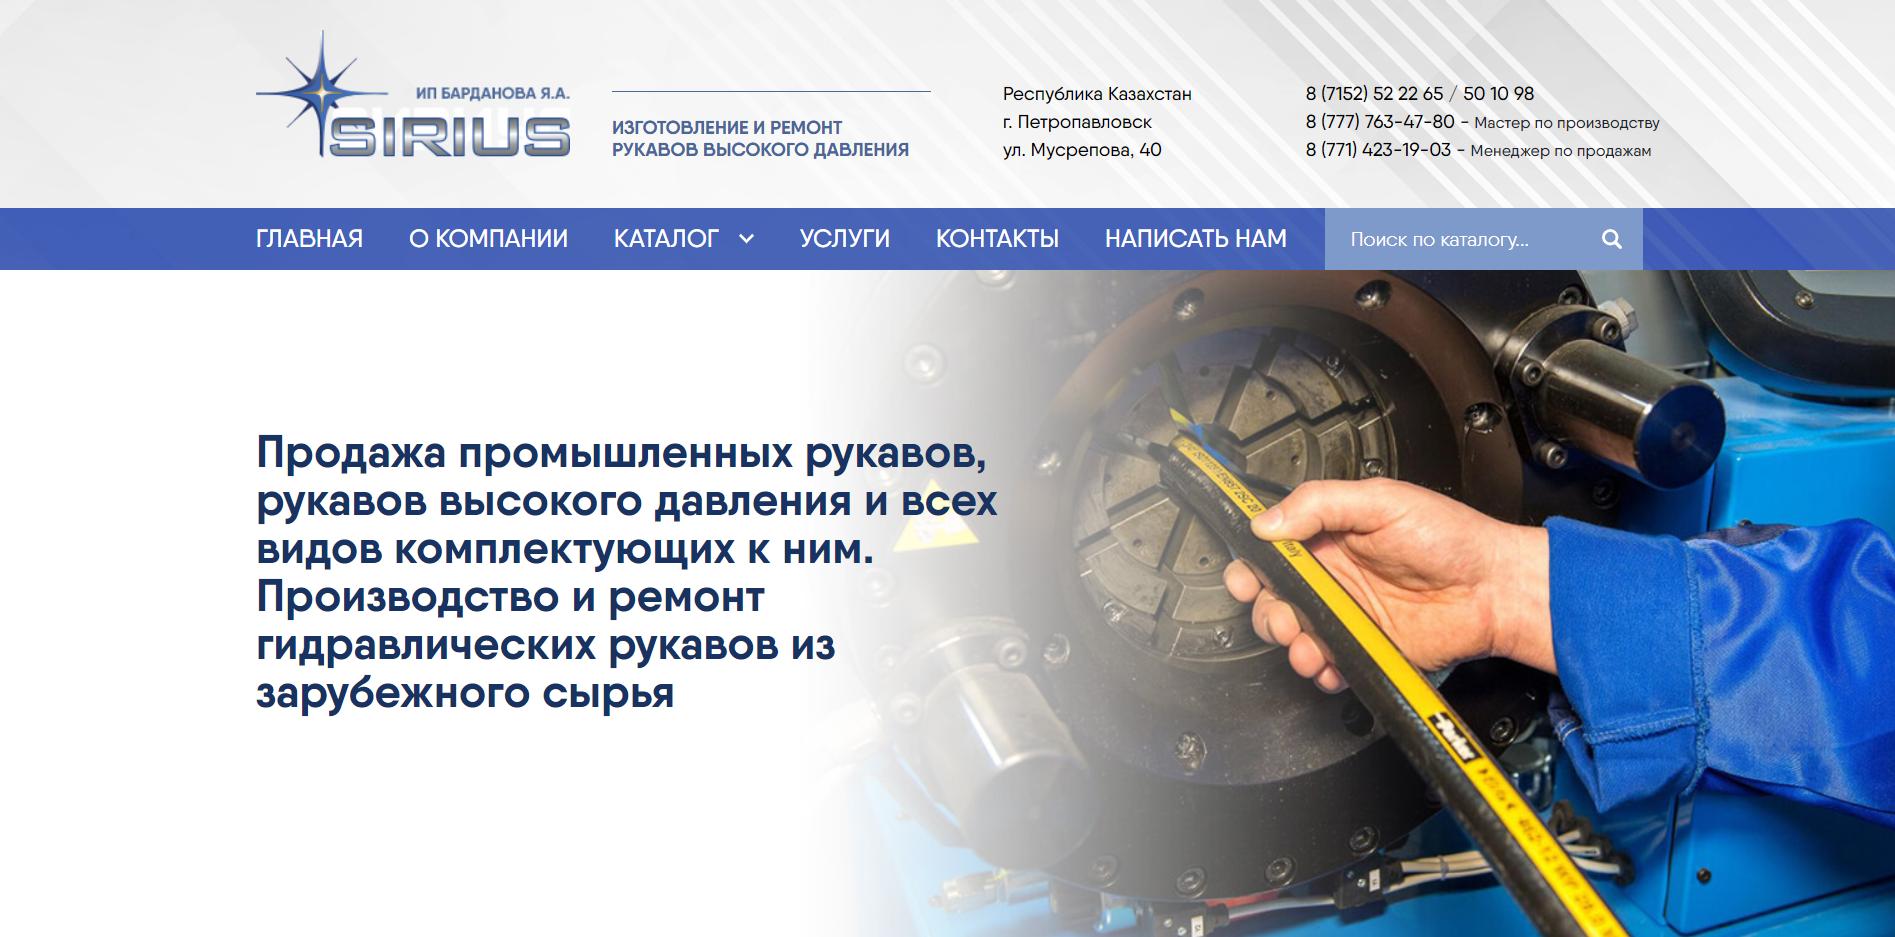 Создание сайта  ИП Баранова Я.А. (торговая марка Sirius) - http://rvds.kz/